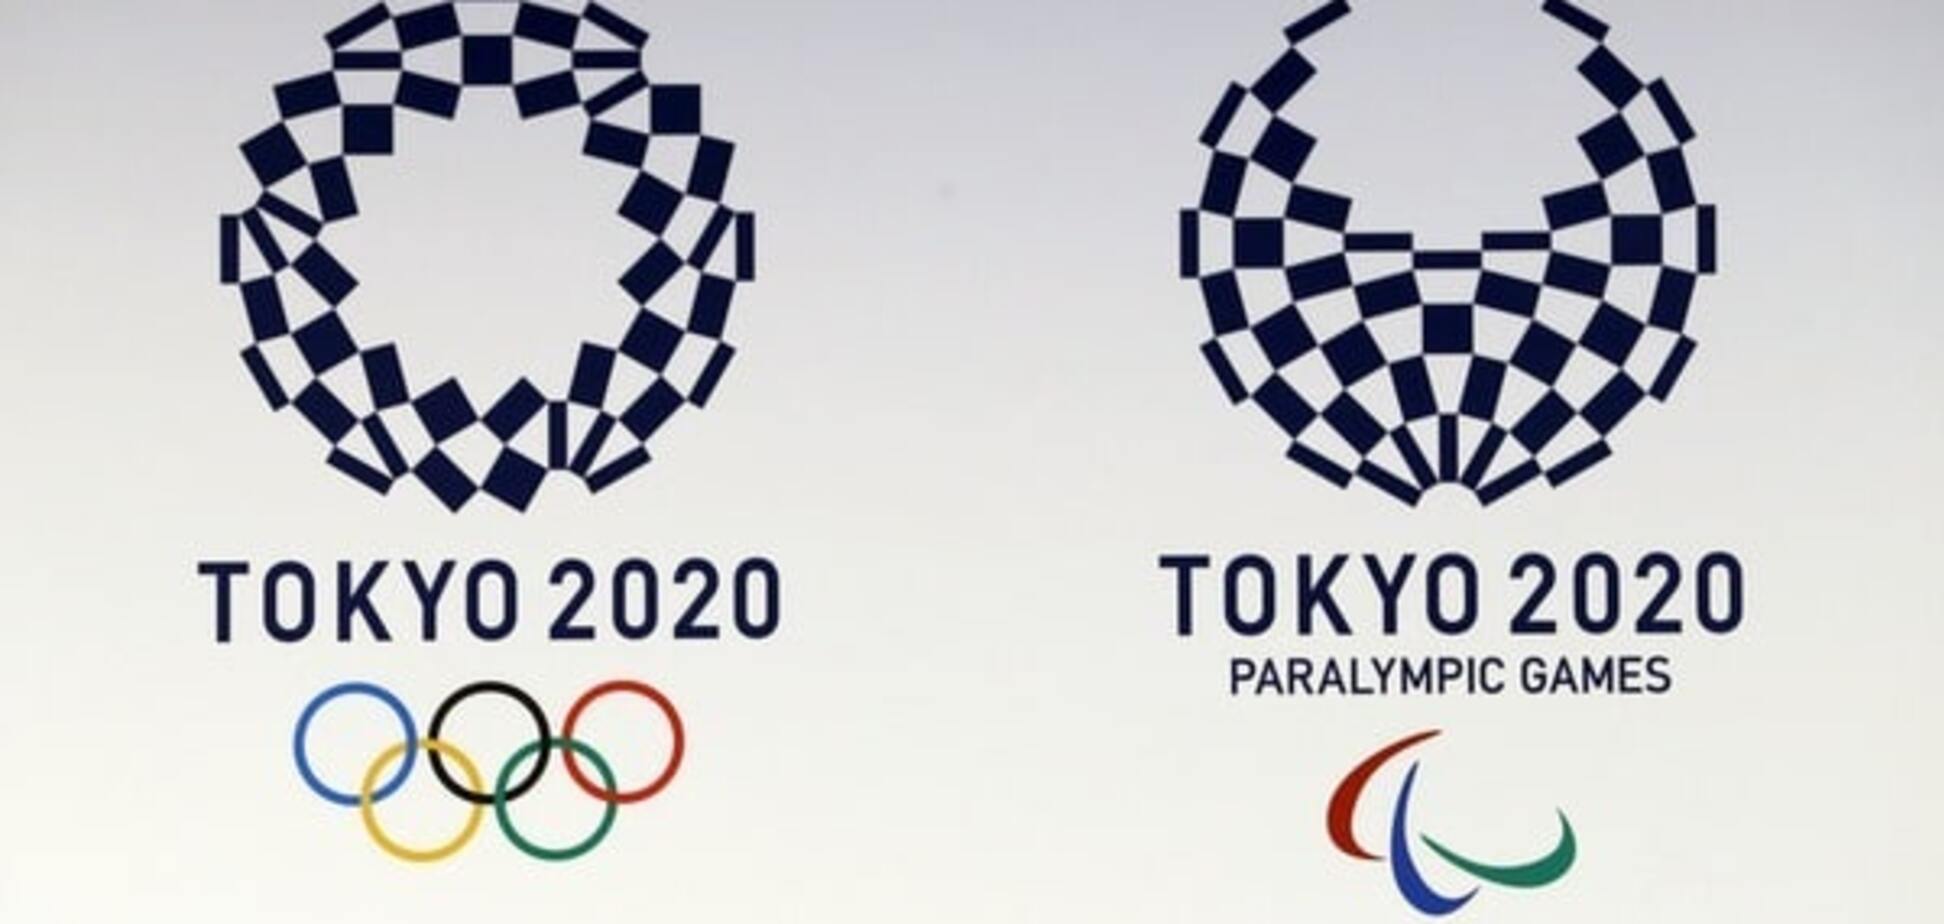 Токио изменил логотип Олимпиады-2020 из-за обвинений в плагиате: фото эмблемы